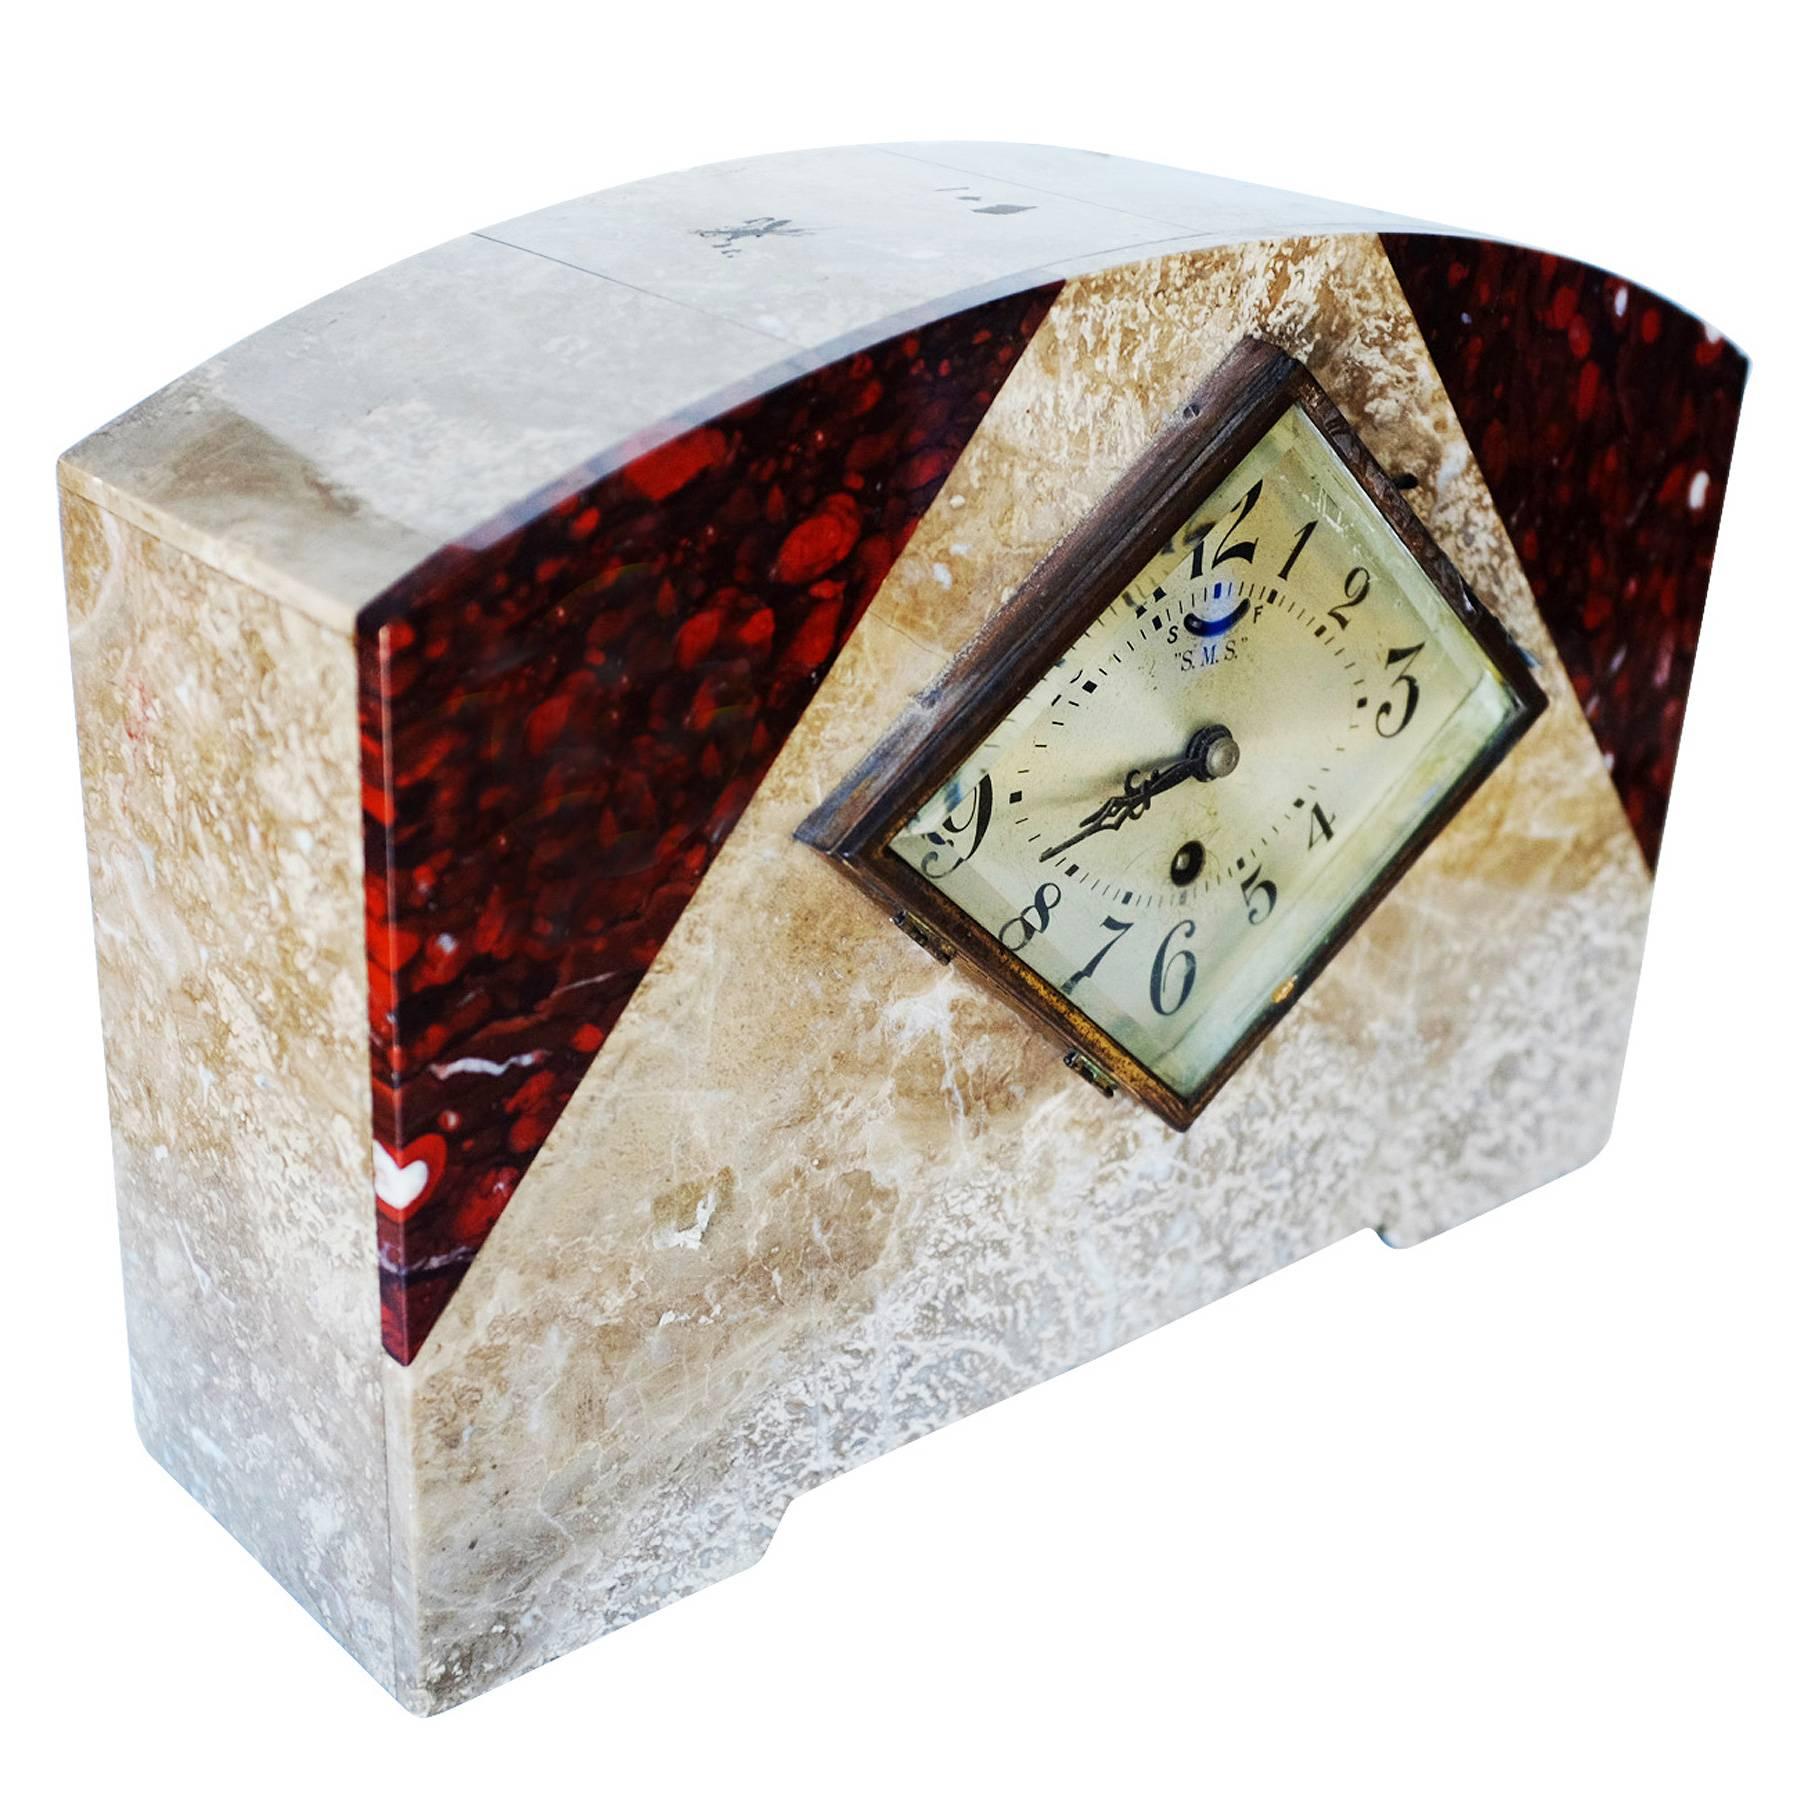 Italienischer Marmor Art Deco Kaminsimsuhr Set mit Uhr und zwei passenden Garnituren. 

Uhr: 10